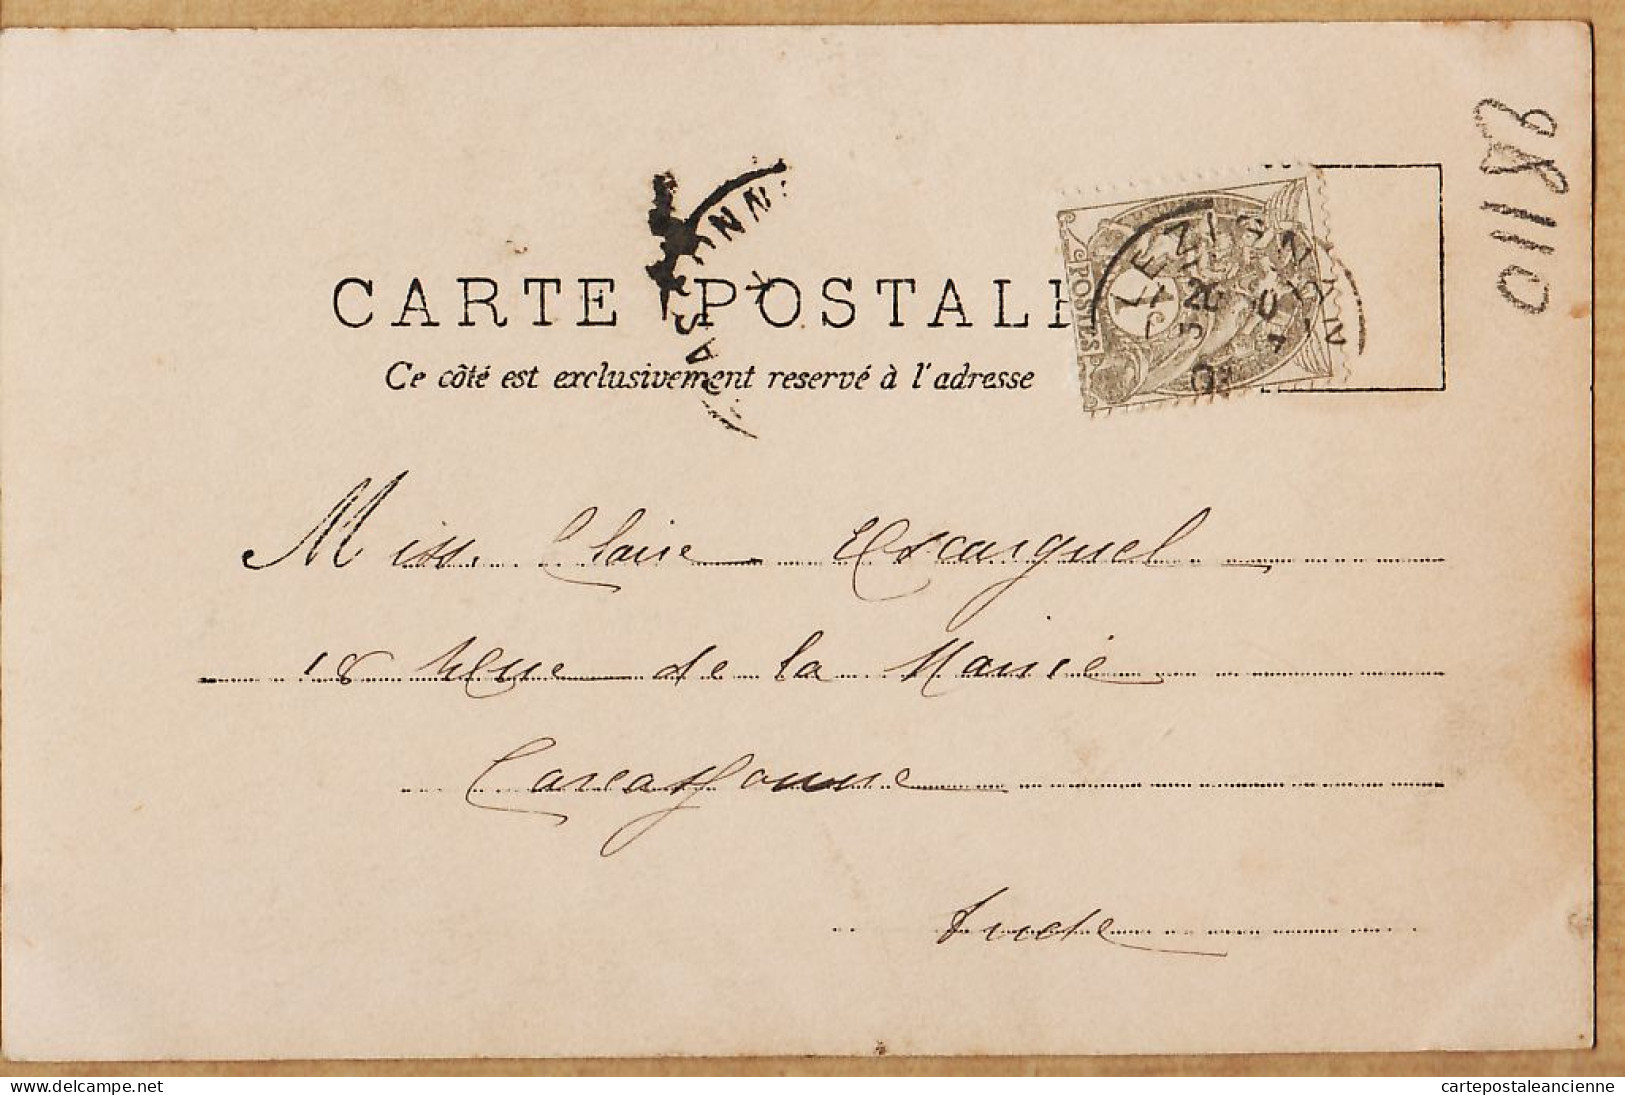 05446 / ⭐ ◉ Métier Marin Pêcheur Carte-Photo NOYER R.P.I 5 COURAGE JOURS MEILLEURS 1903 à Claire ESCARGUEL Carcassonne - Pêche